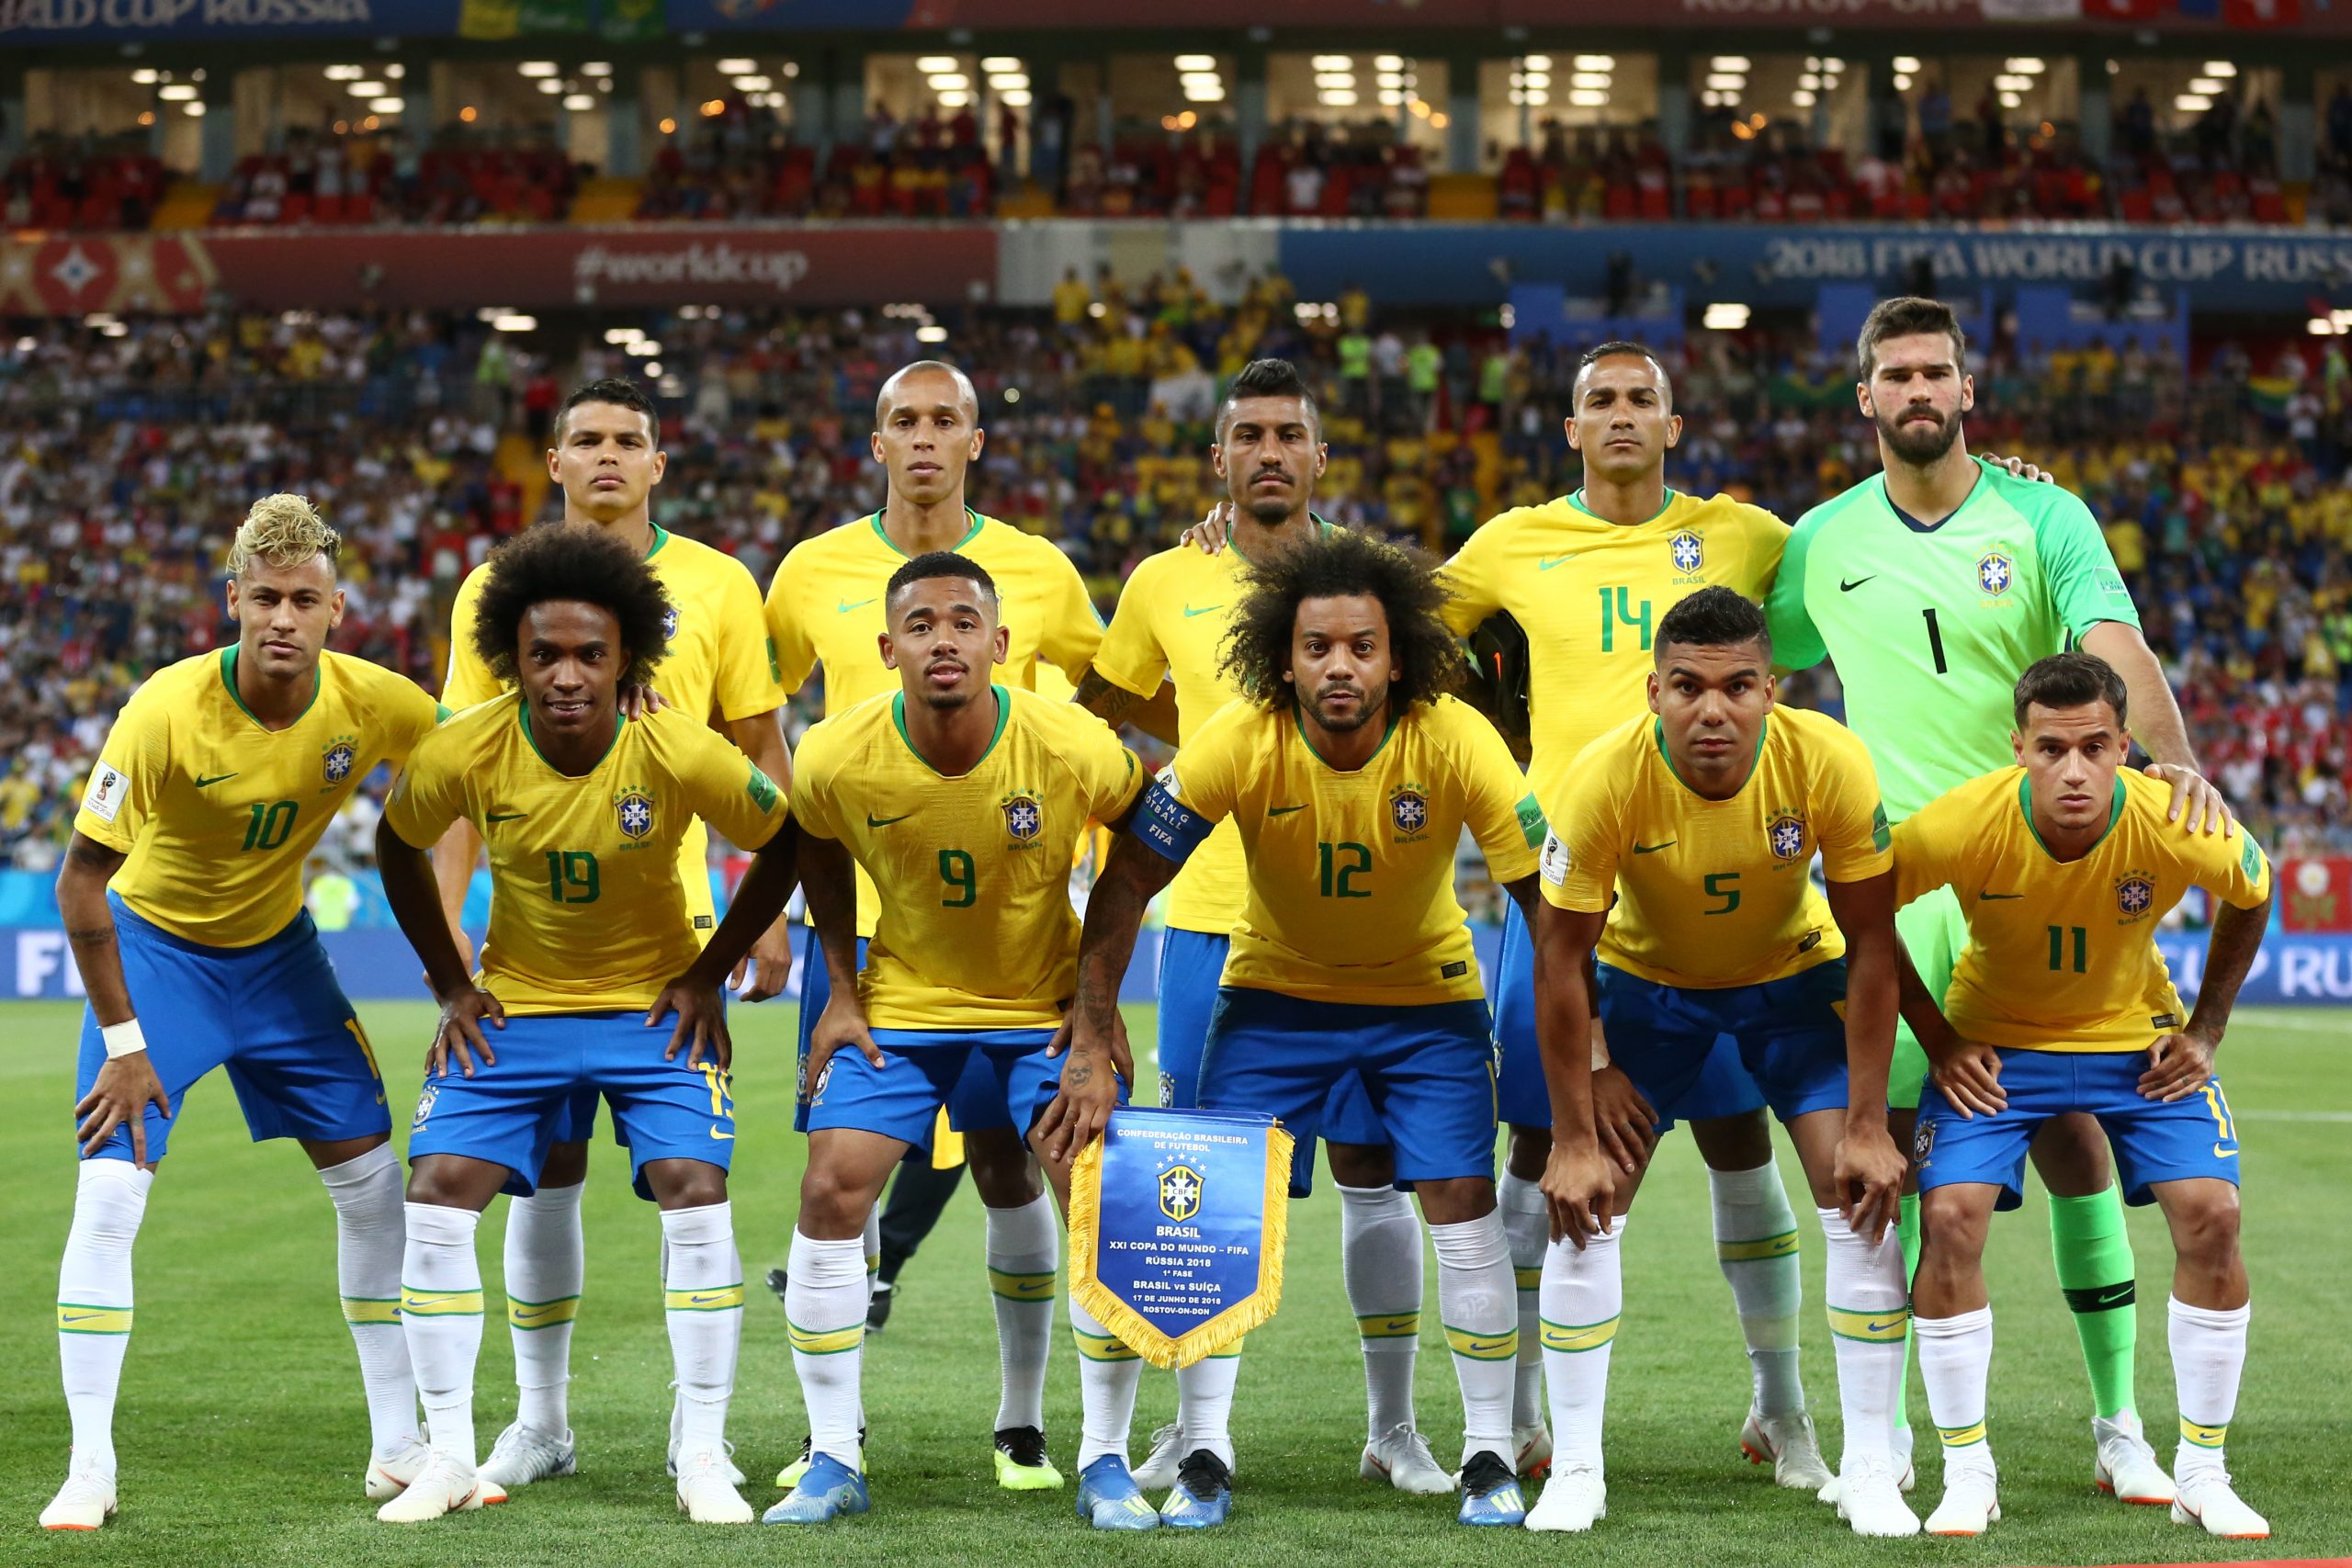 https://static.ndmais.com.br/2022/11/brasil-estreia-copa-2018-scaled.jpg